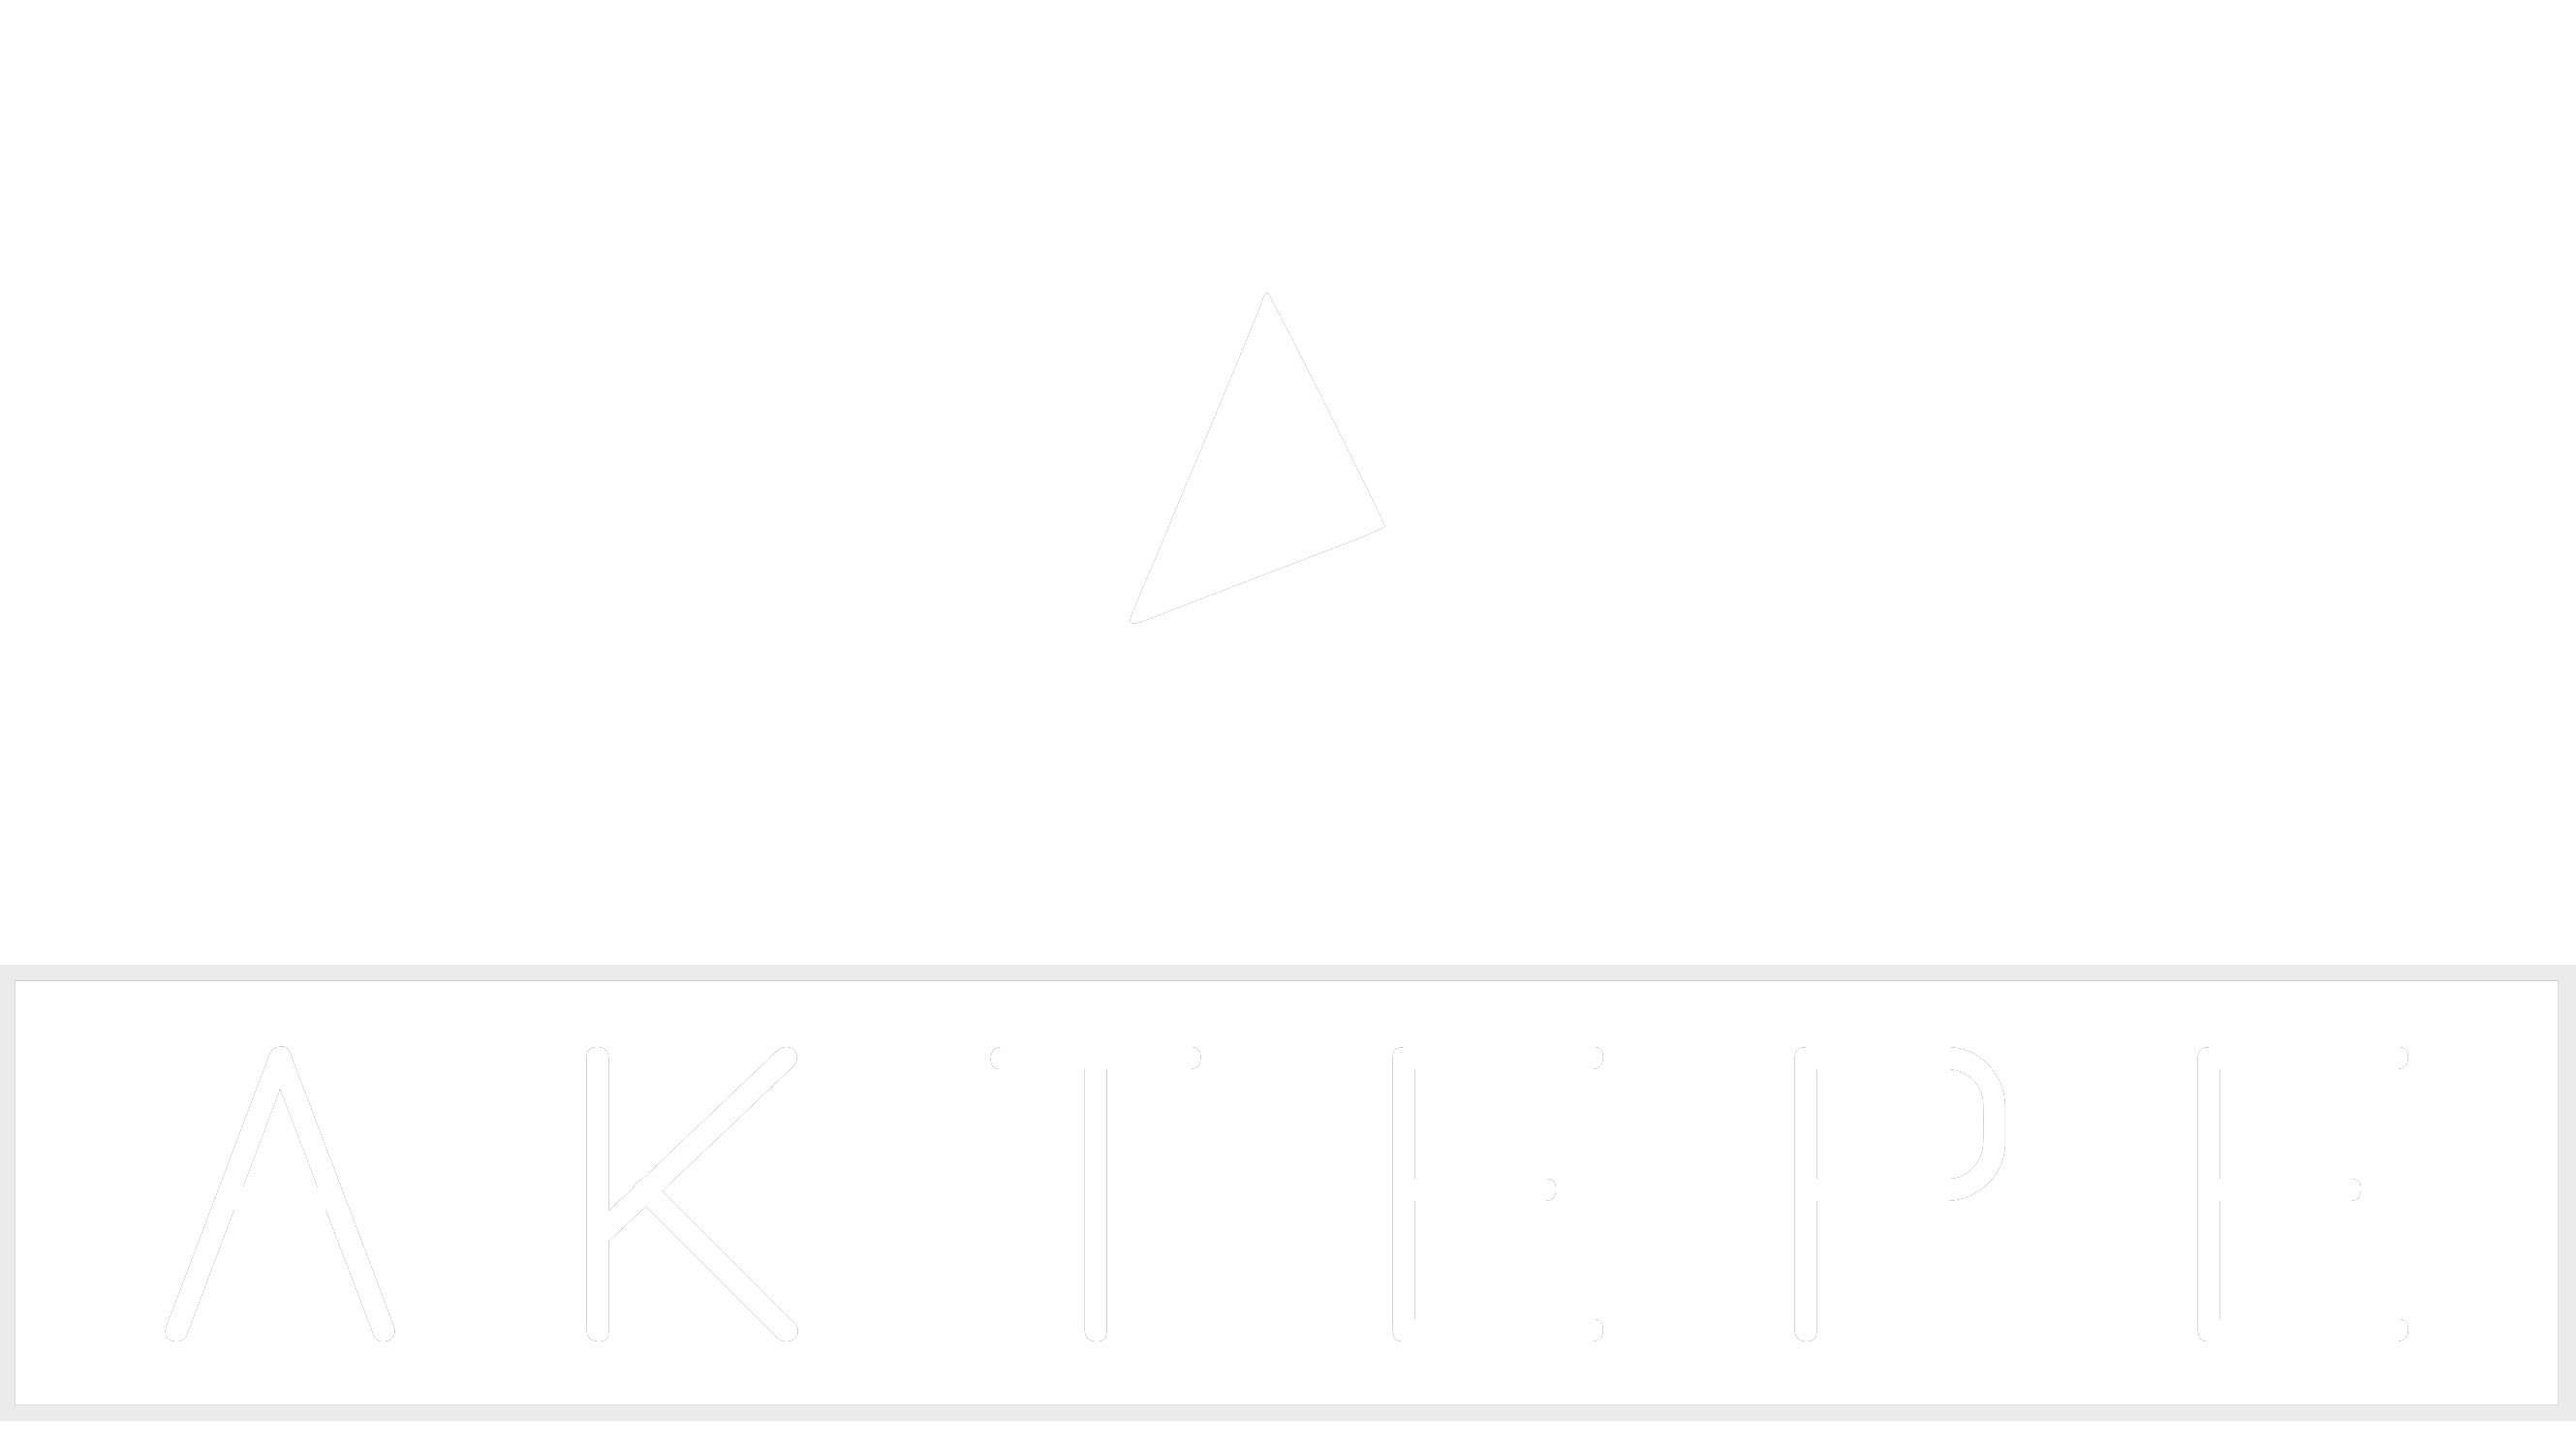 Honda - Aktepe Shop - Oto Müzik Görüntü Navigasyon Sistemleri ve Teyp Çerçevesi Satış Merkezi